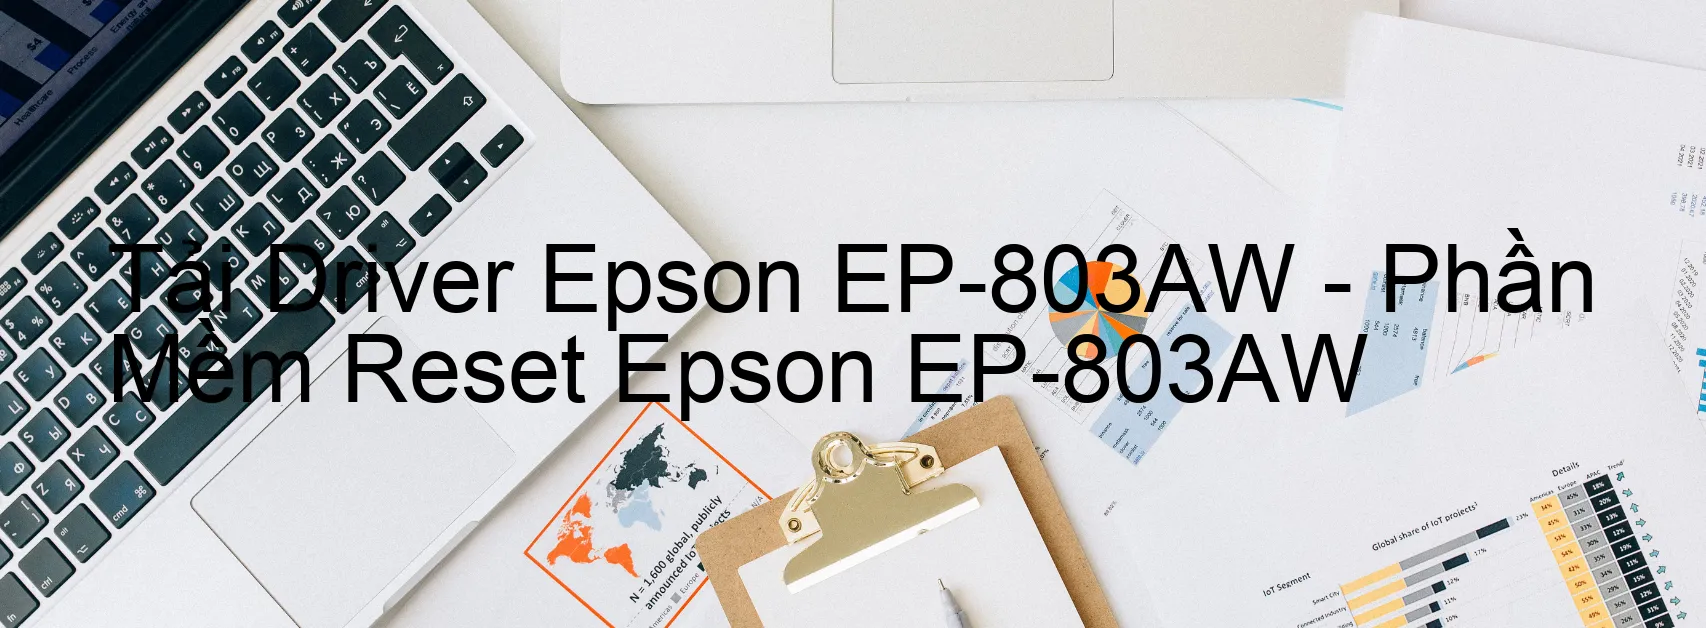 Driver Epson EP-803AW, Phần Mềm Reset Epson EP-803AW